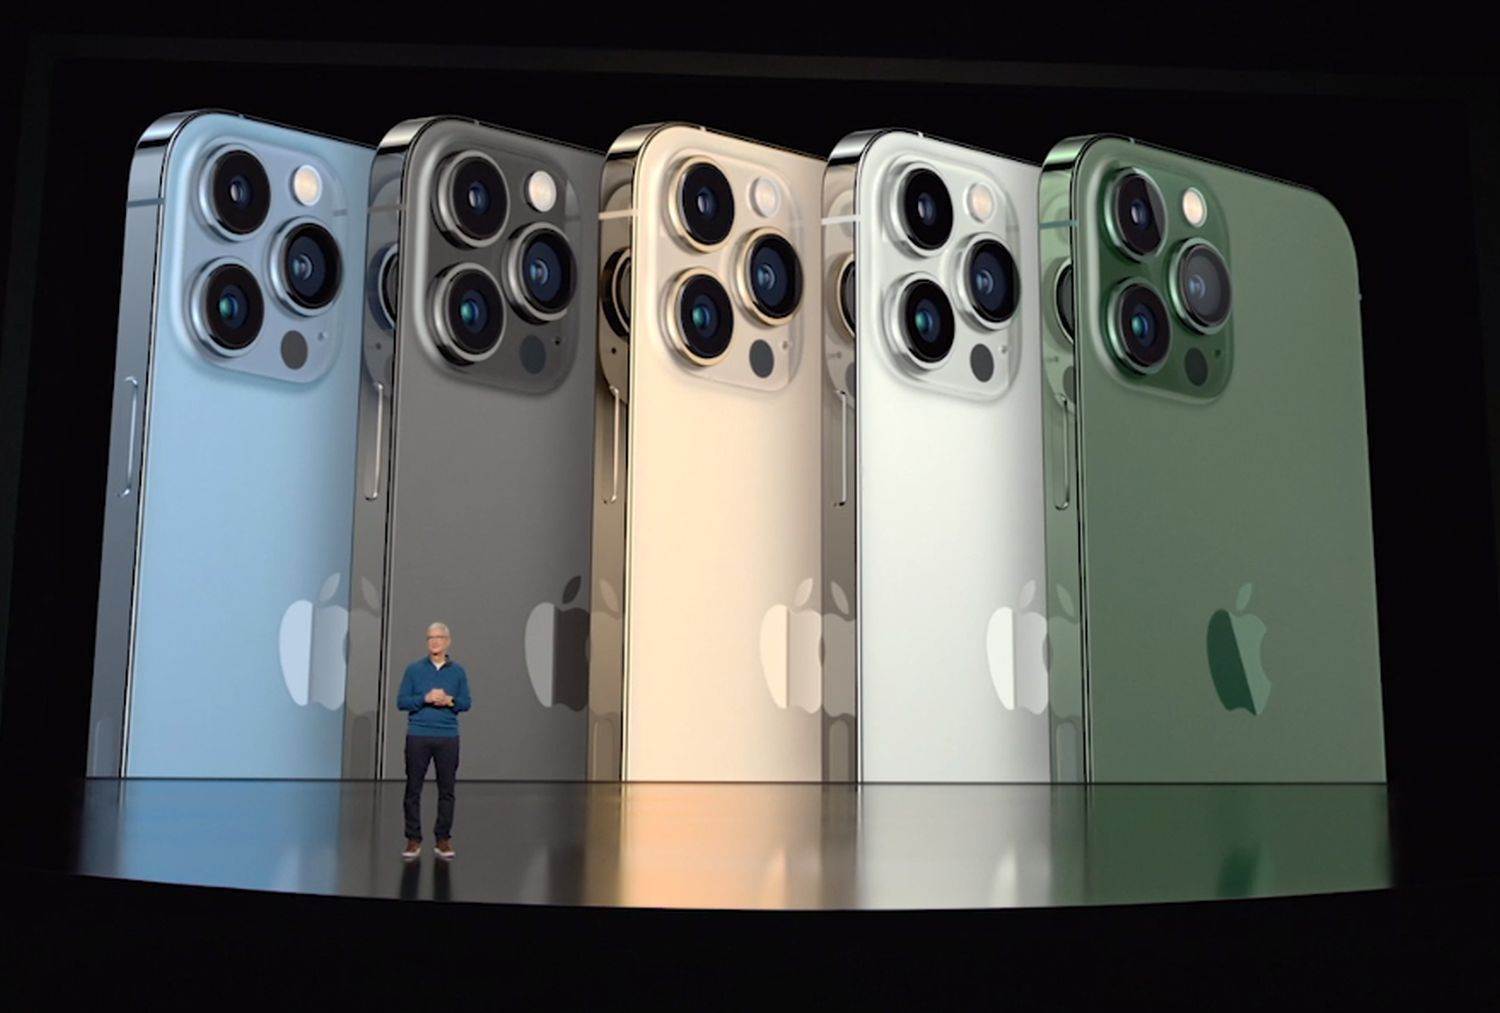  Apple iPhone 13 serija.jpg 